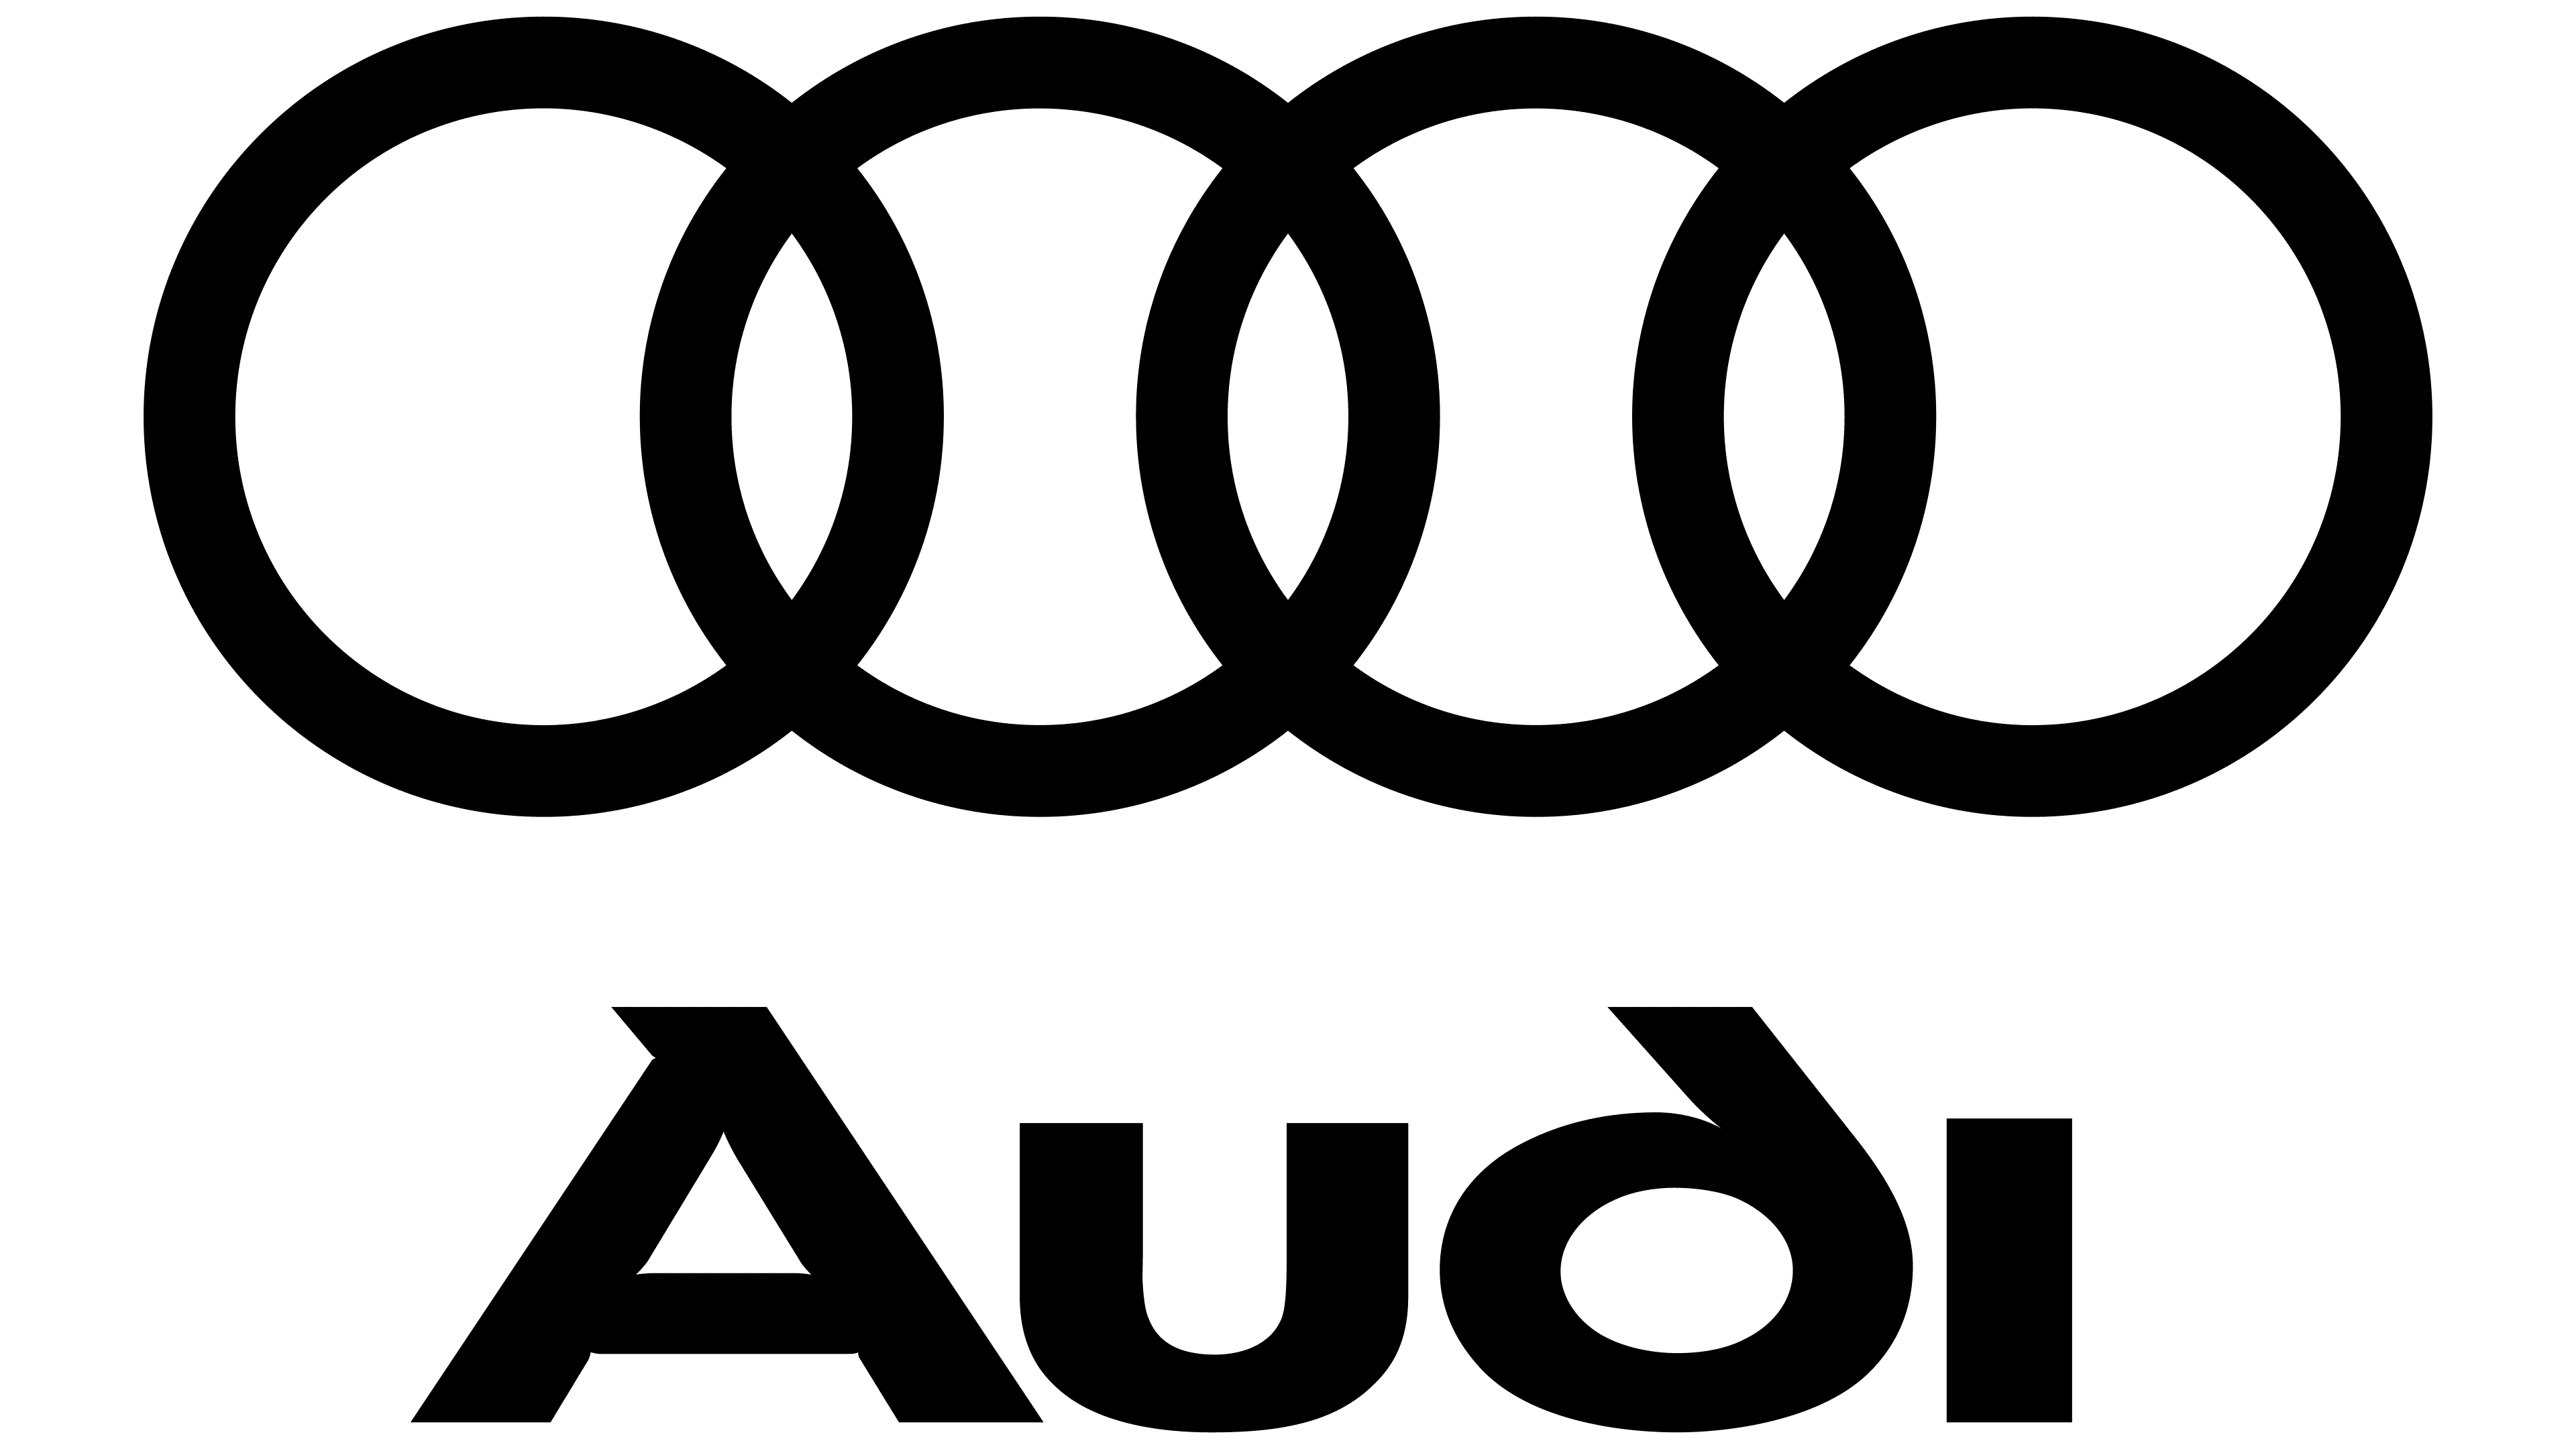 18+ Логотип Audi обои на рабочий стол, компьютер, телефон, iPhone, Android, Windows от andreabailey